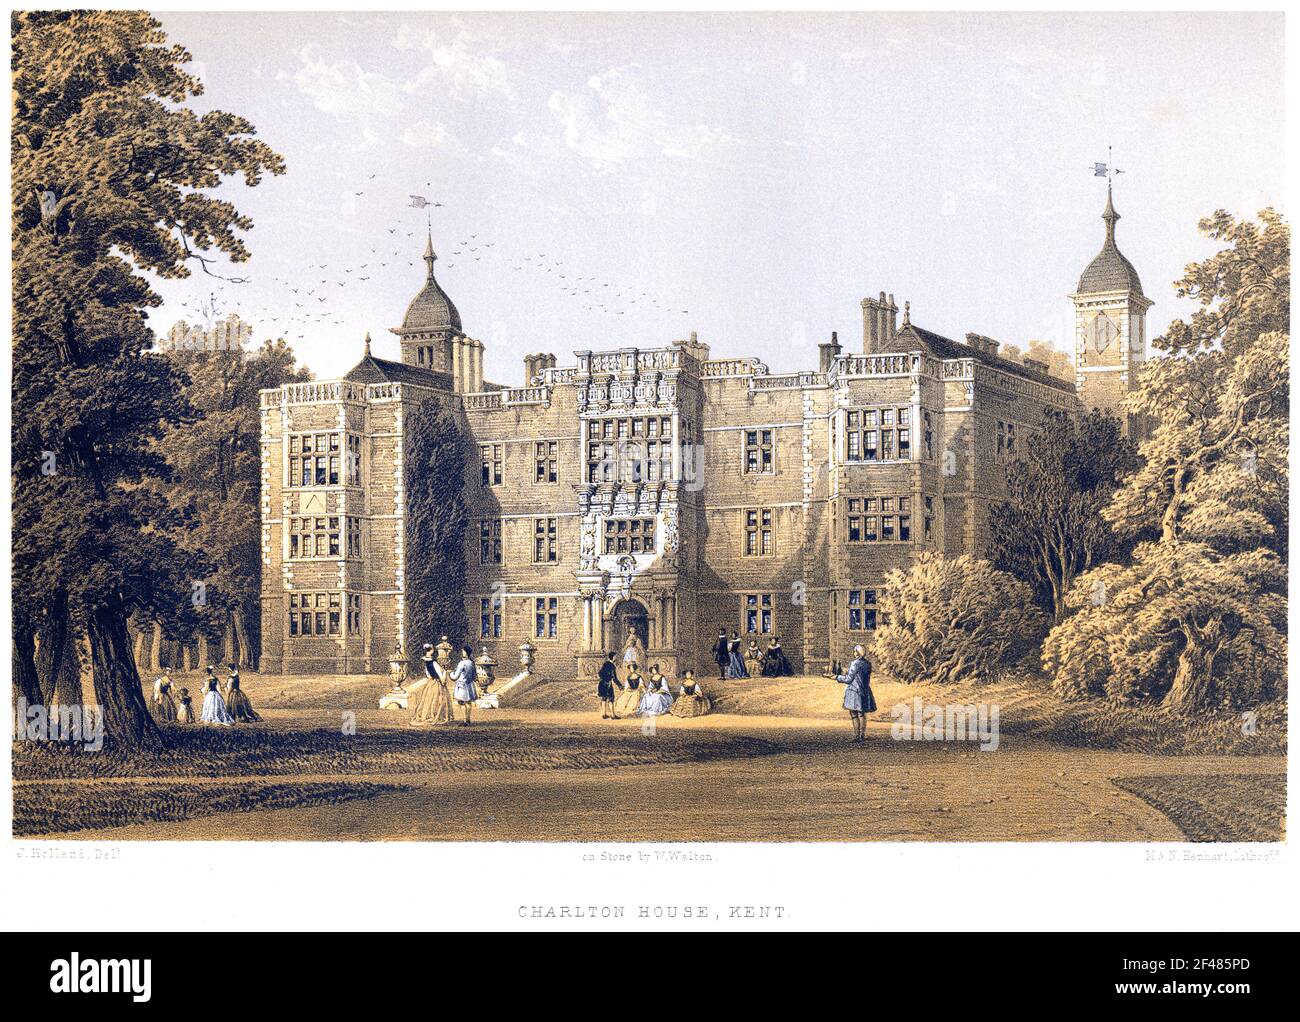 Una litotinta de Charlton House, Kent (Greenwich) UK escaneada a alta resolución de un libro impreso en 1858. Se cree que los derechos de autor son libres Foto de stock